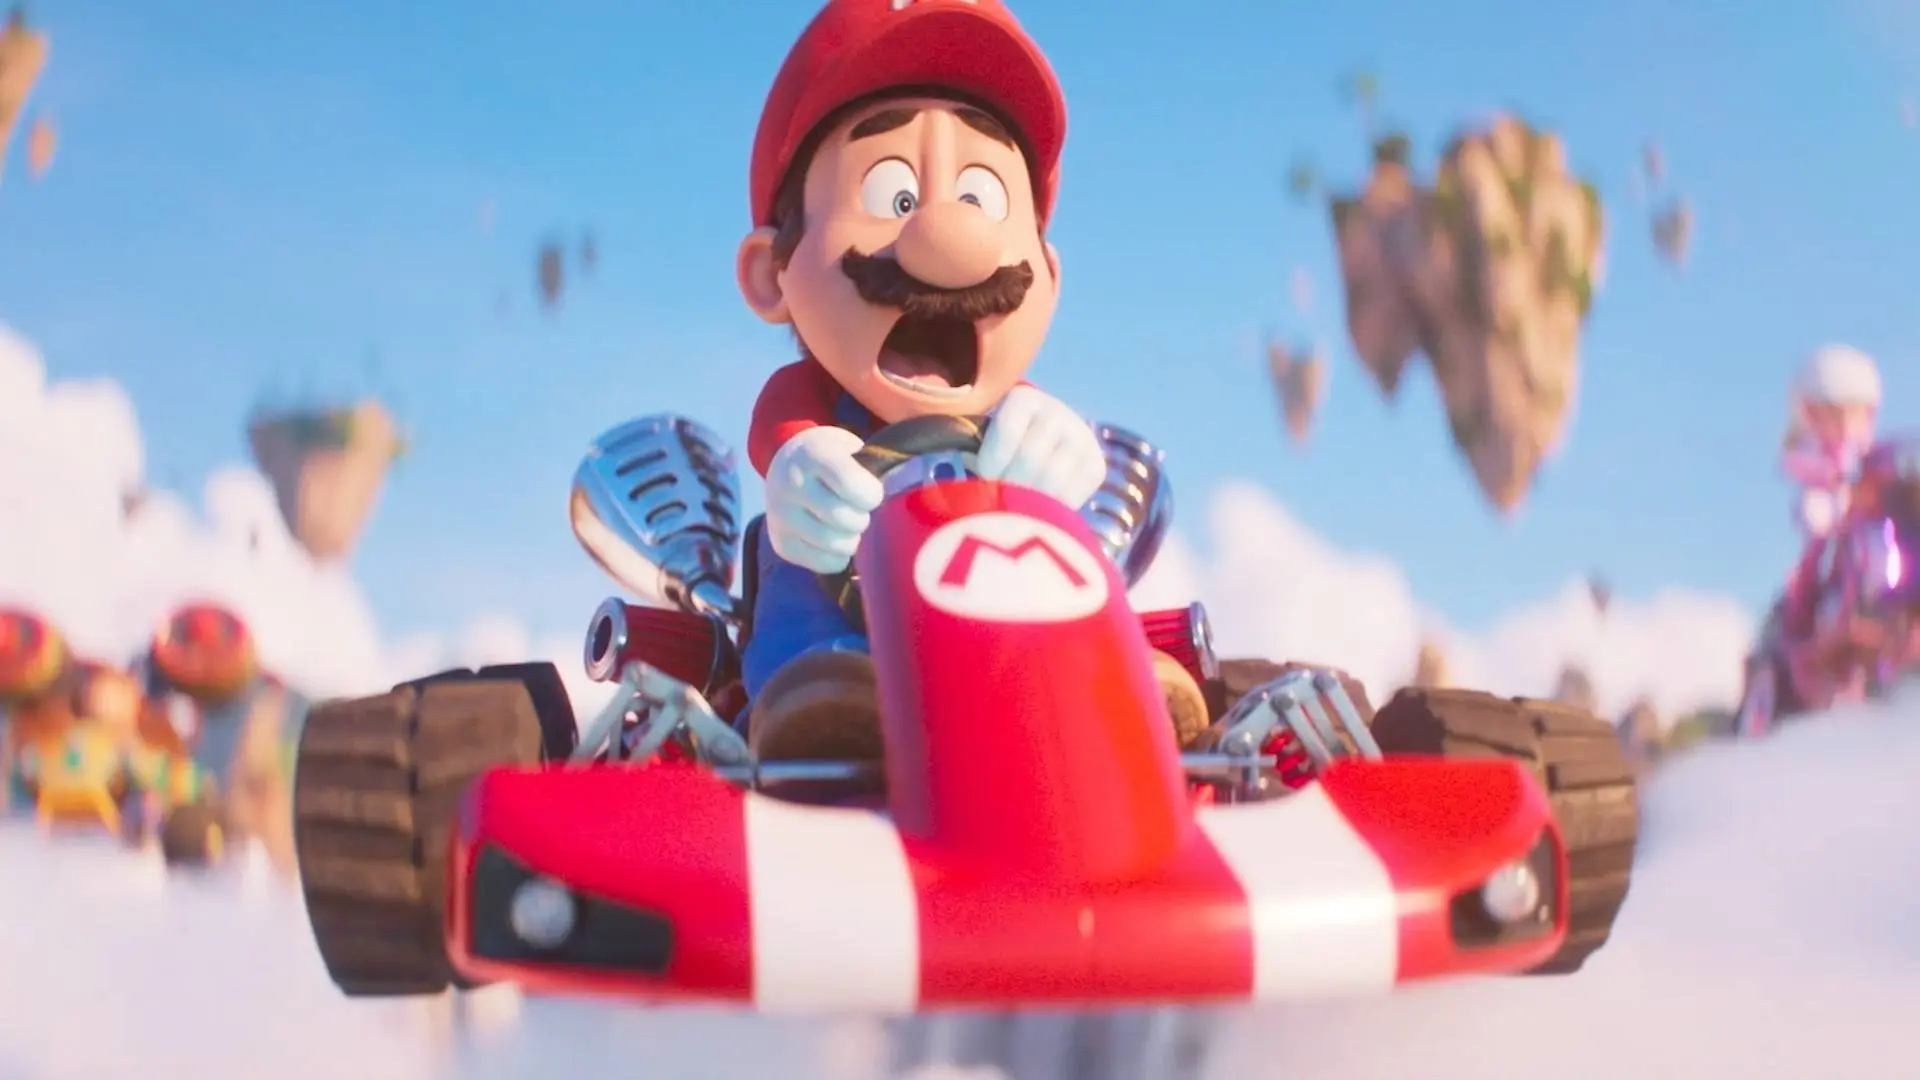 Super Mario Bros. O Filme - Análise